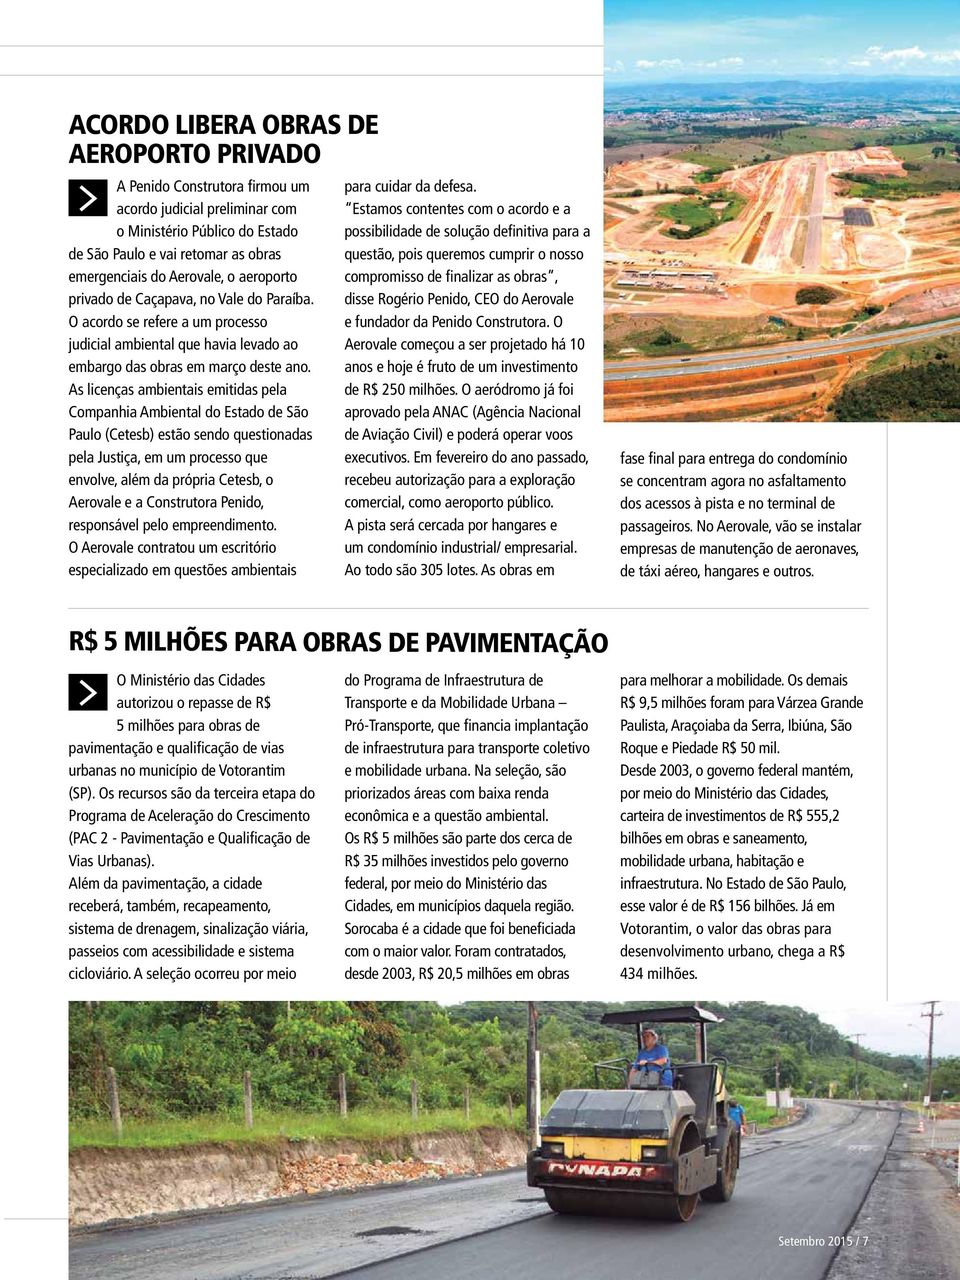 As licenças ambientais emitidas pela Companhia Ambiental do Estado de São Paulo (Cetesb) estão sendo questionadas pela Justiça, em um processo que envolve, além da própria Cetesb, o Aerovale e a